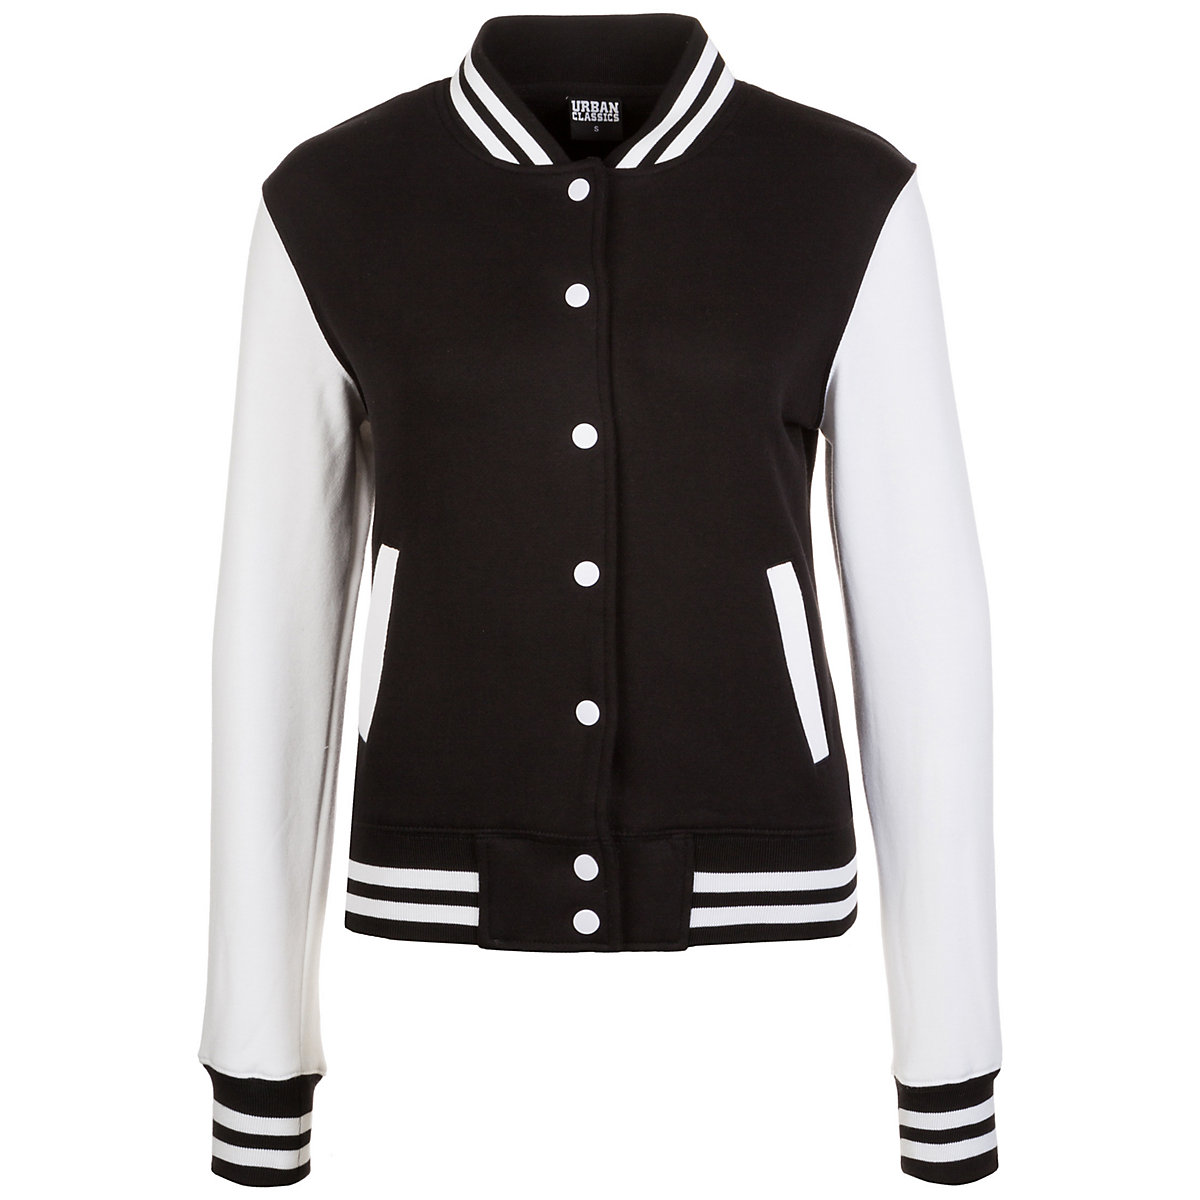 Urban Classics 2-tone College Jacke Damen Trainingsjacken schwarz/weiß